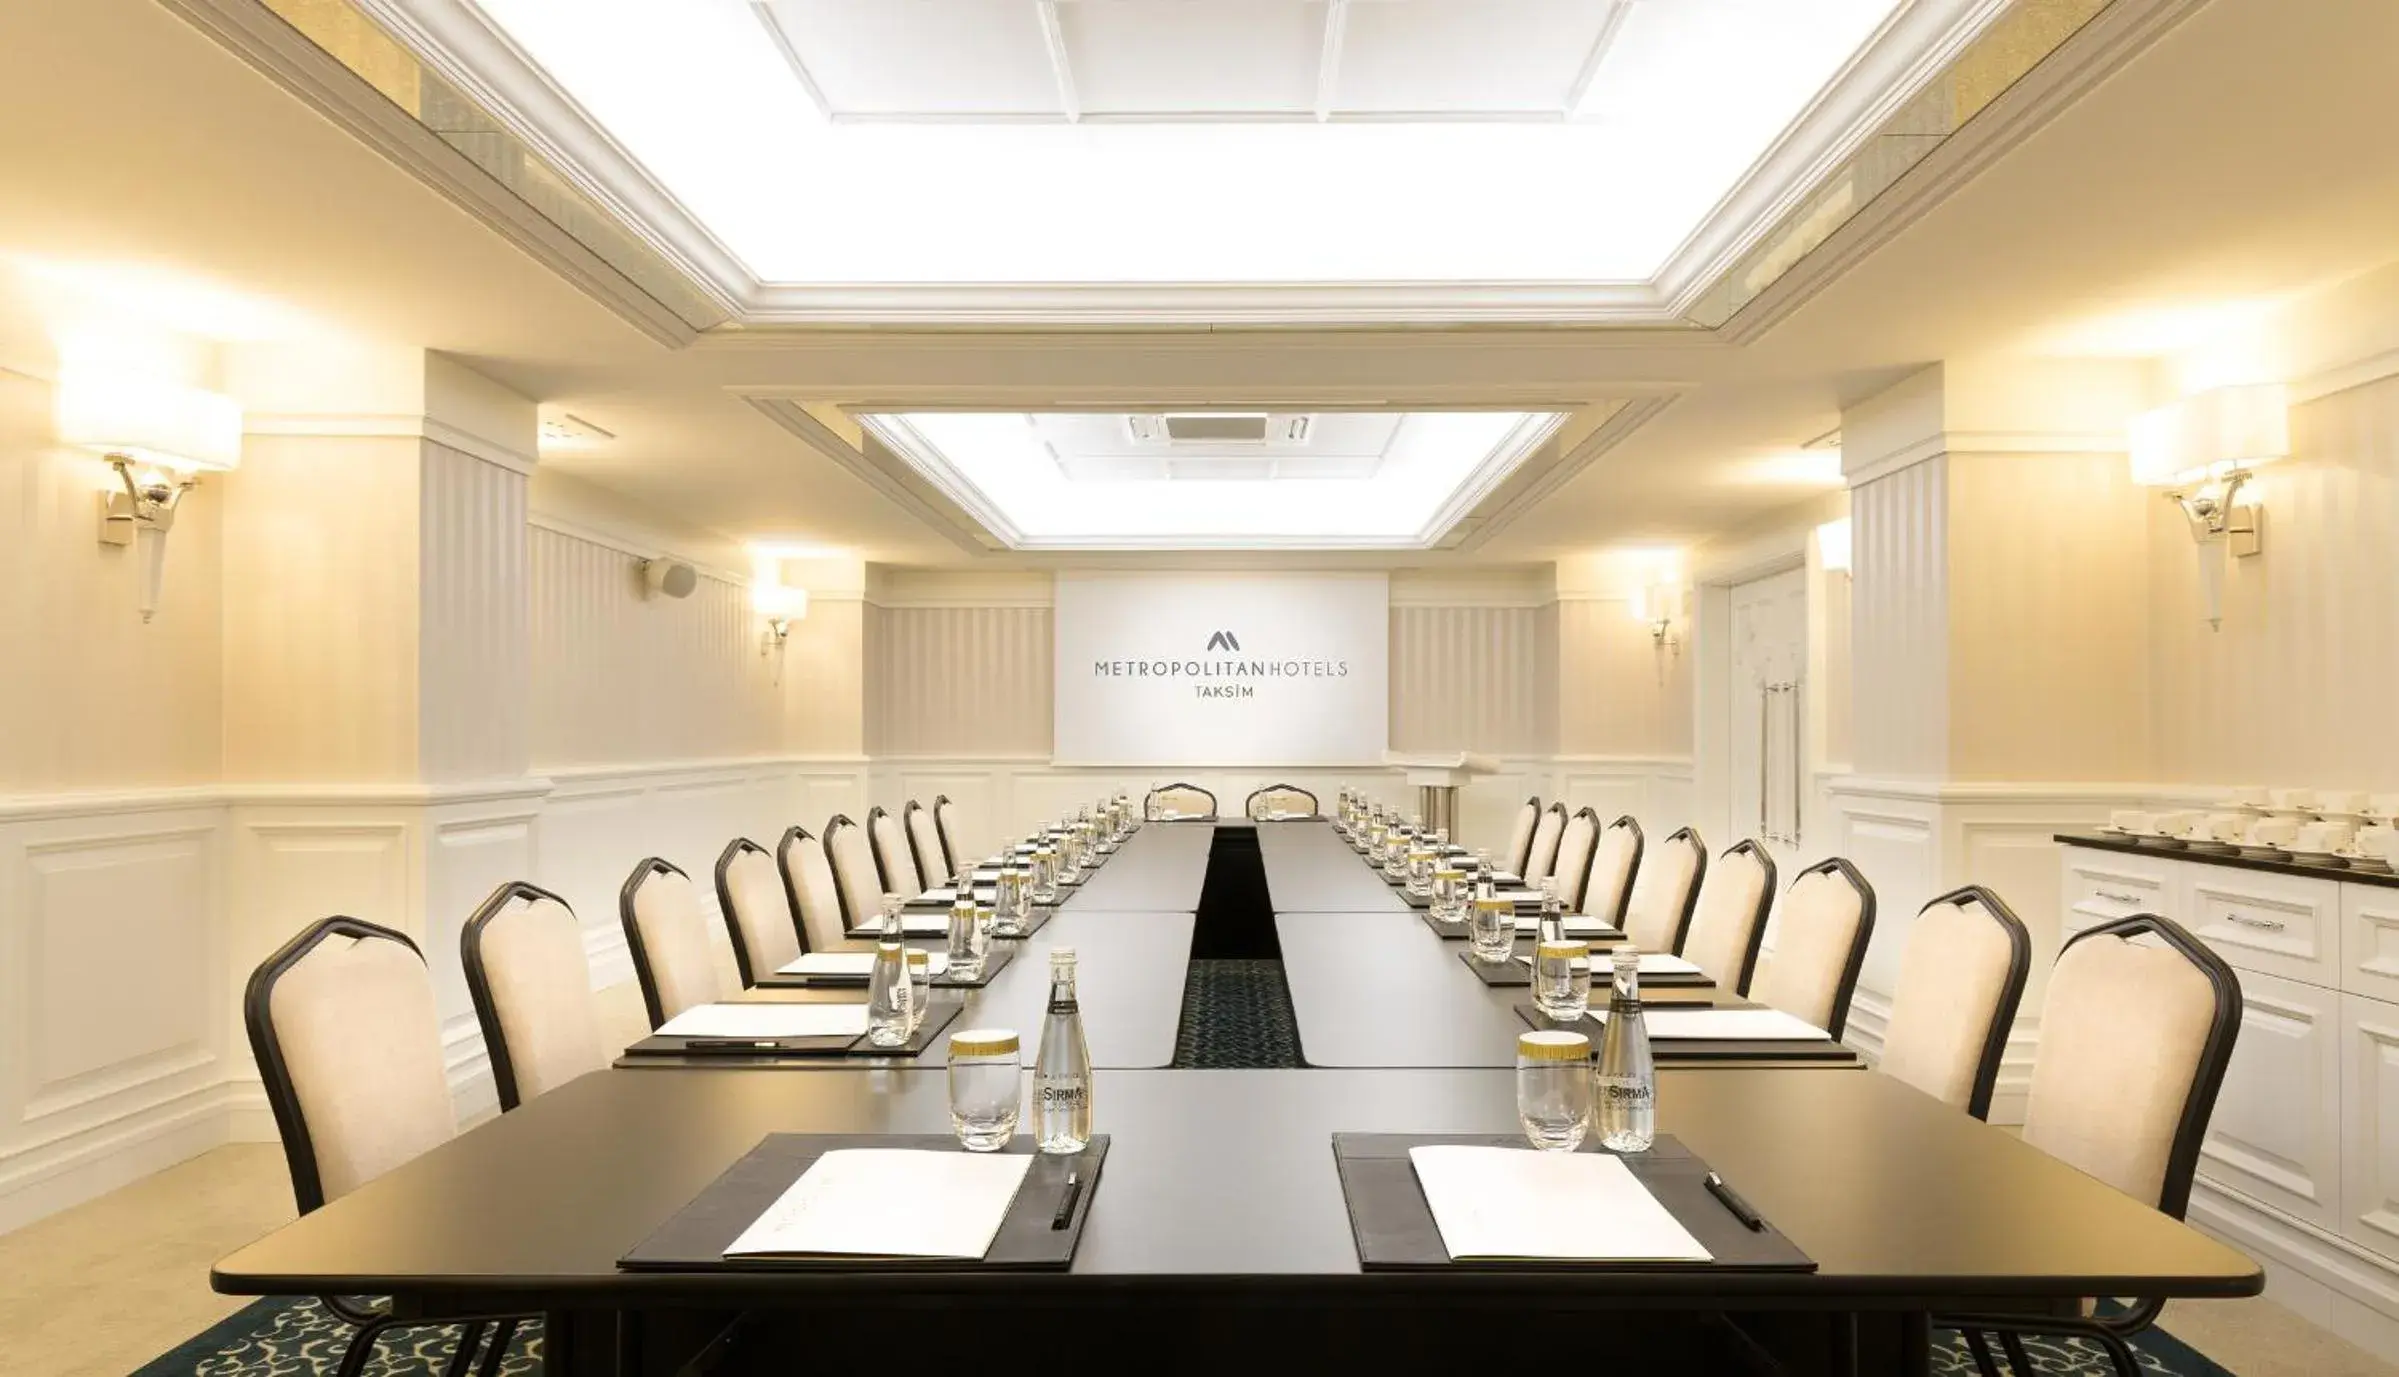 Meeting/conference room in Metropolitan Hotels Taksim